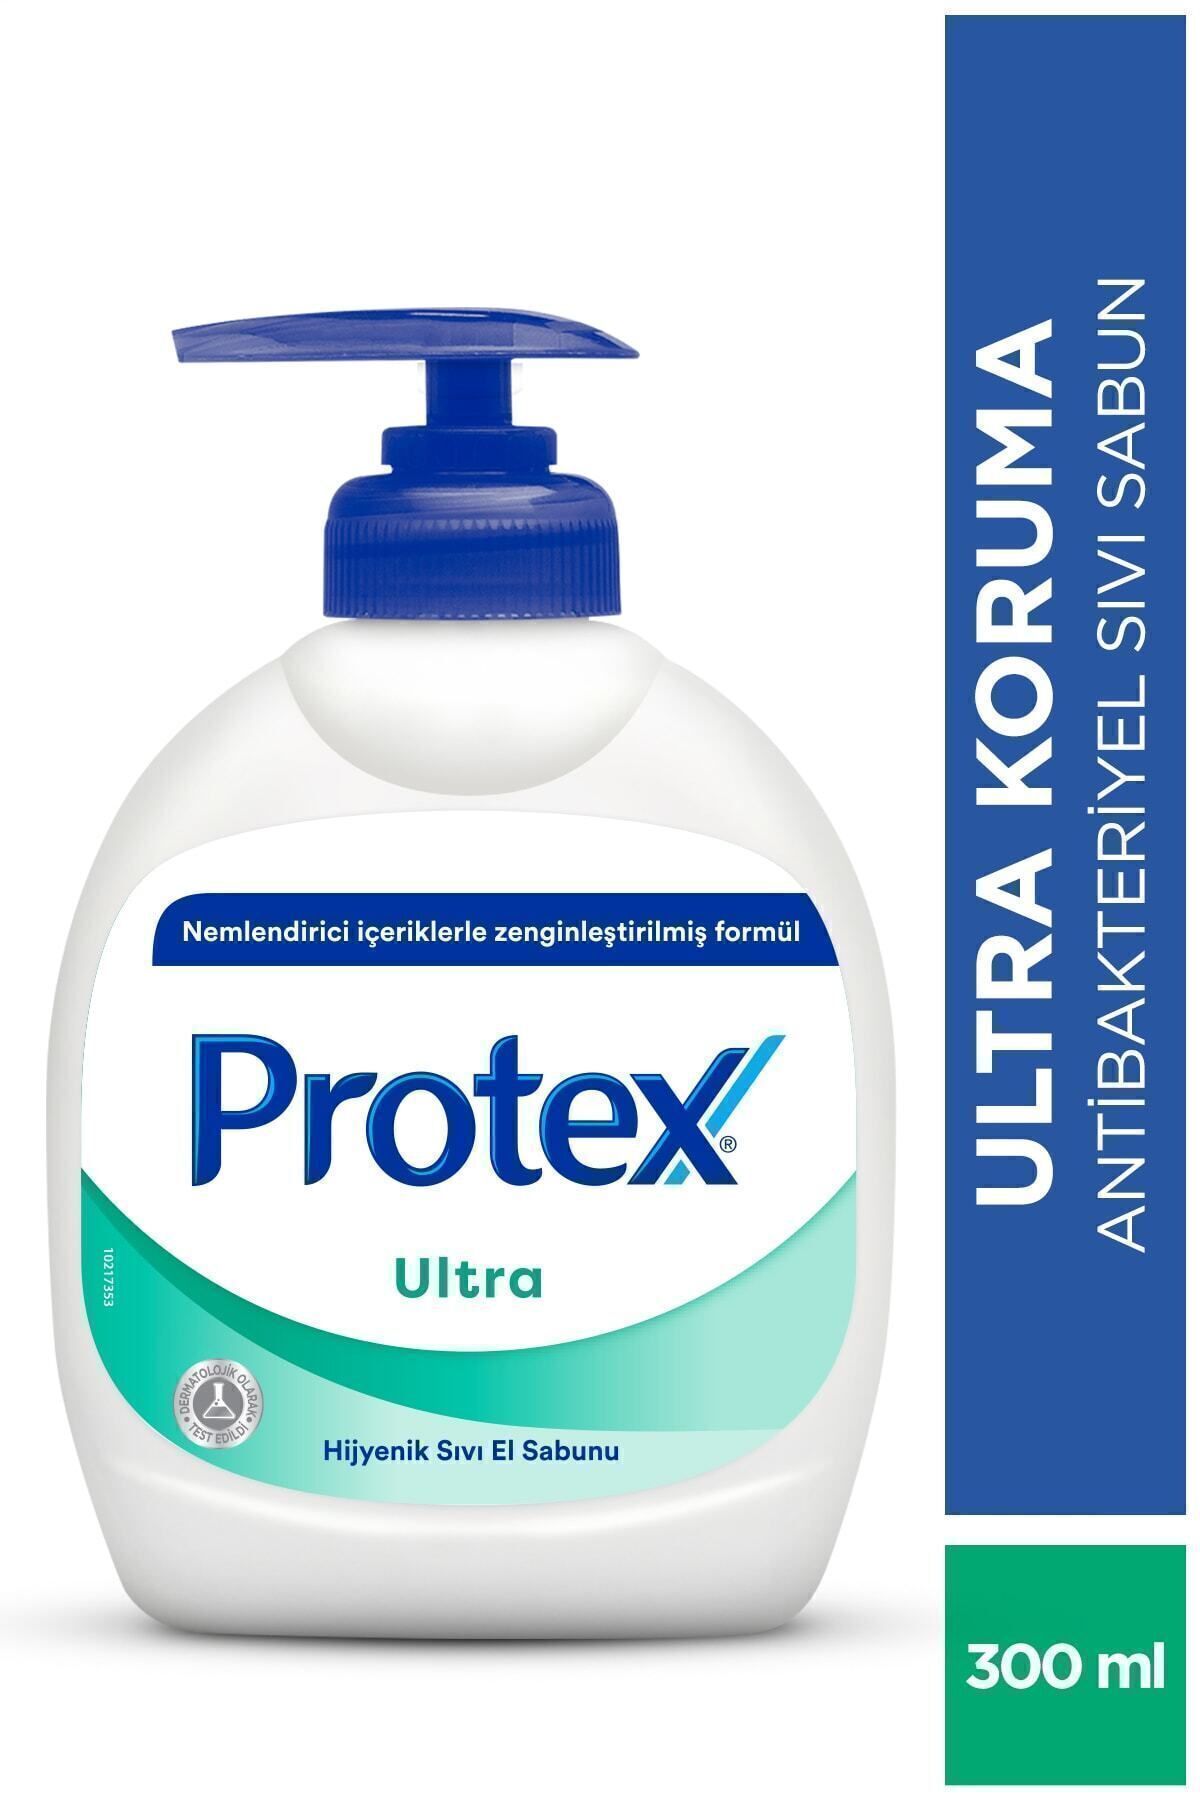 Protex Ultra Uzun Süreli Koruma Sıvı Sabun 300 ml